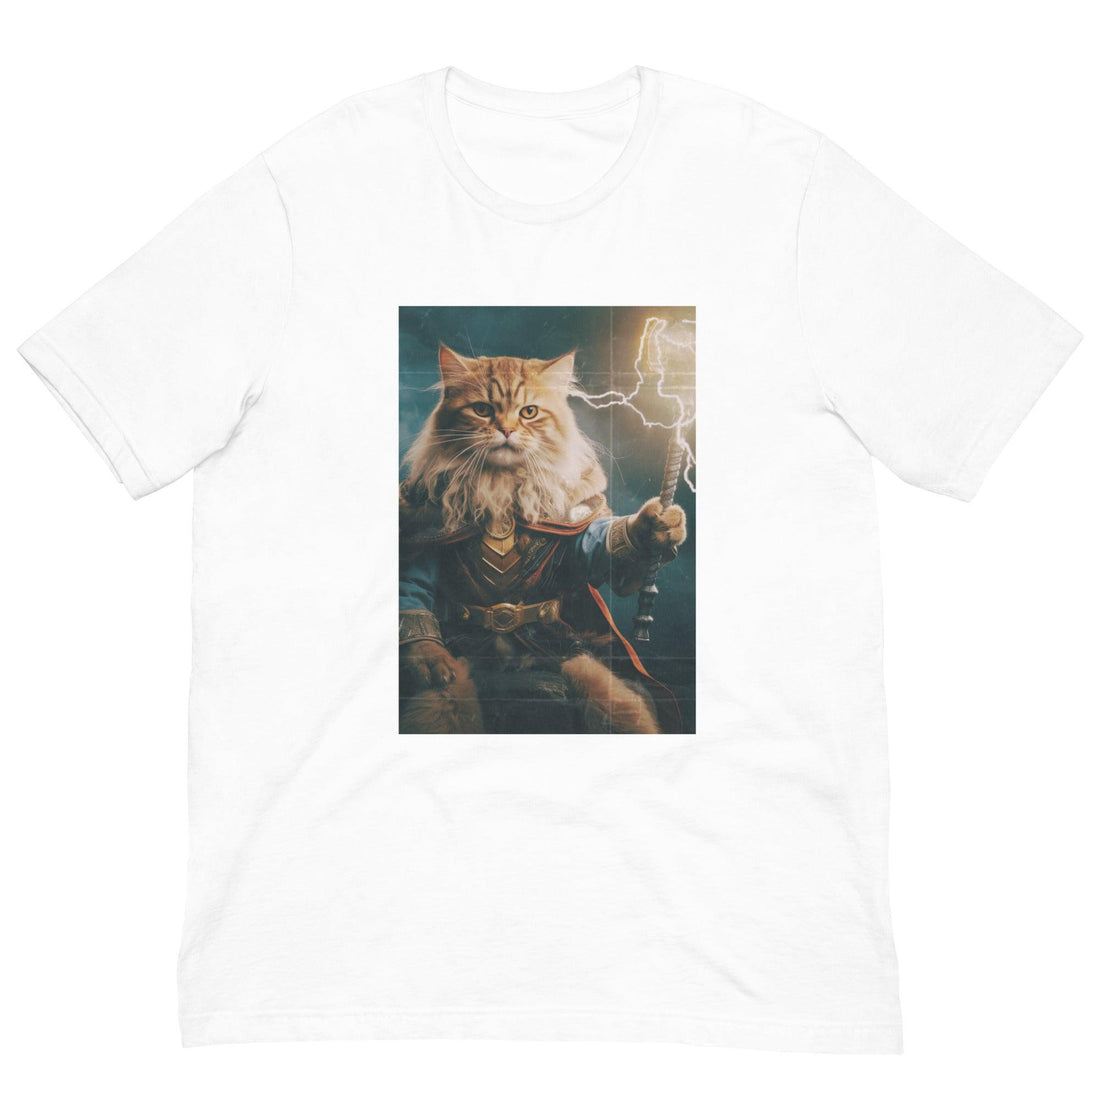 Zeus Cat Shirt - Cat Shirts USA